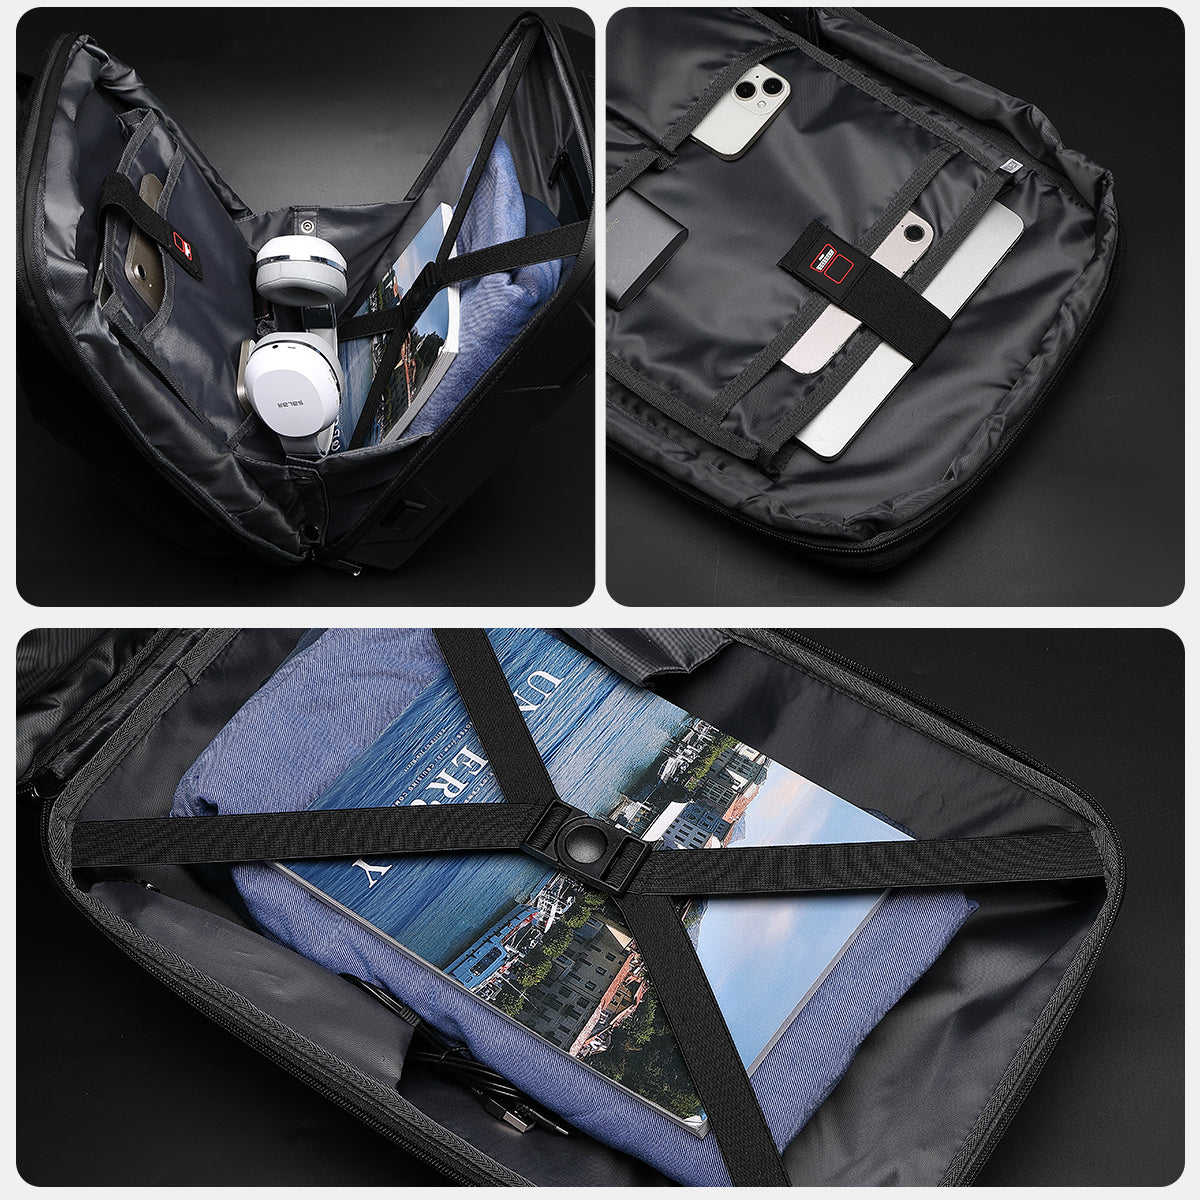 Cyberbackpack ビジネス、ゲーム、旅行用の拡張可能で機能的なラップトップ バッグ – 耐久性があり、スタイリッシュで安全、USB 充電ポートを装備